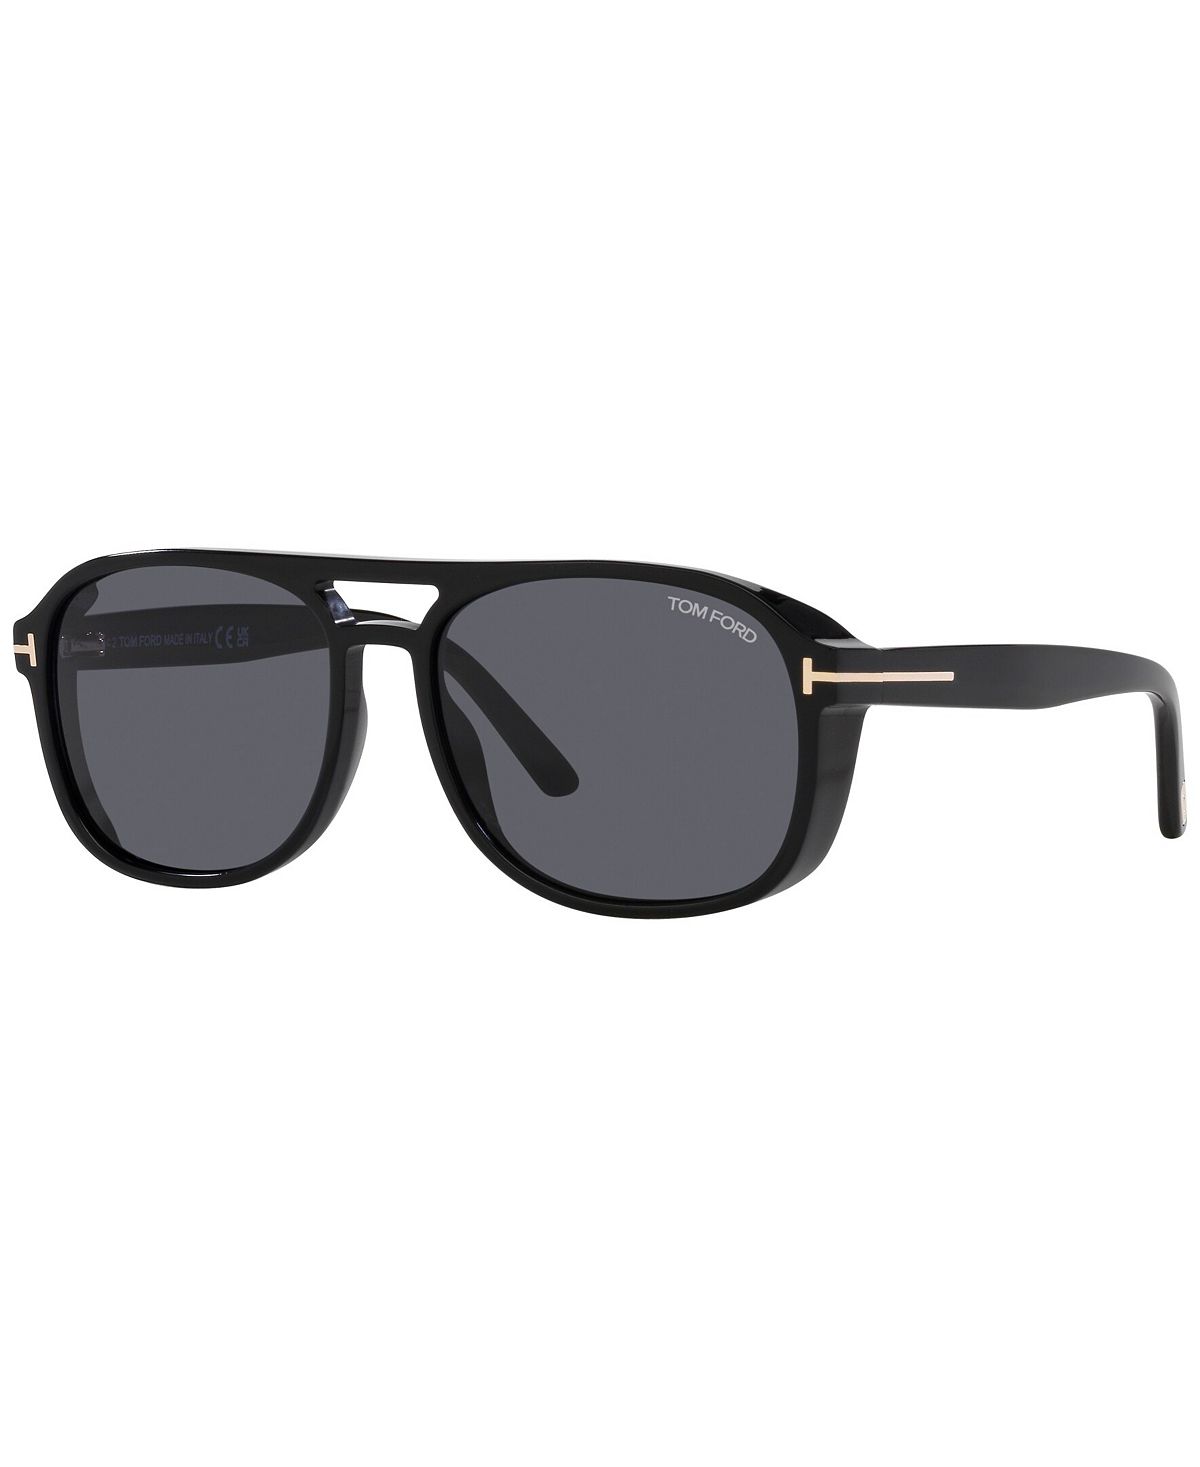 Мужские солнцезащитные очки, Rosco Tom Ford 56793